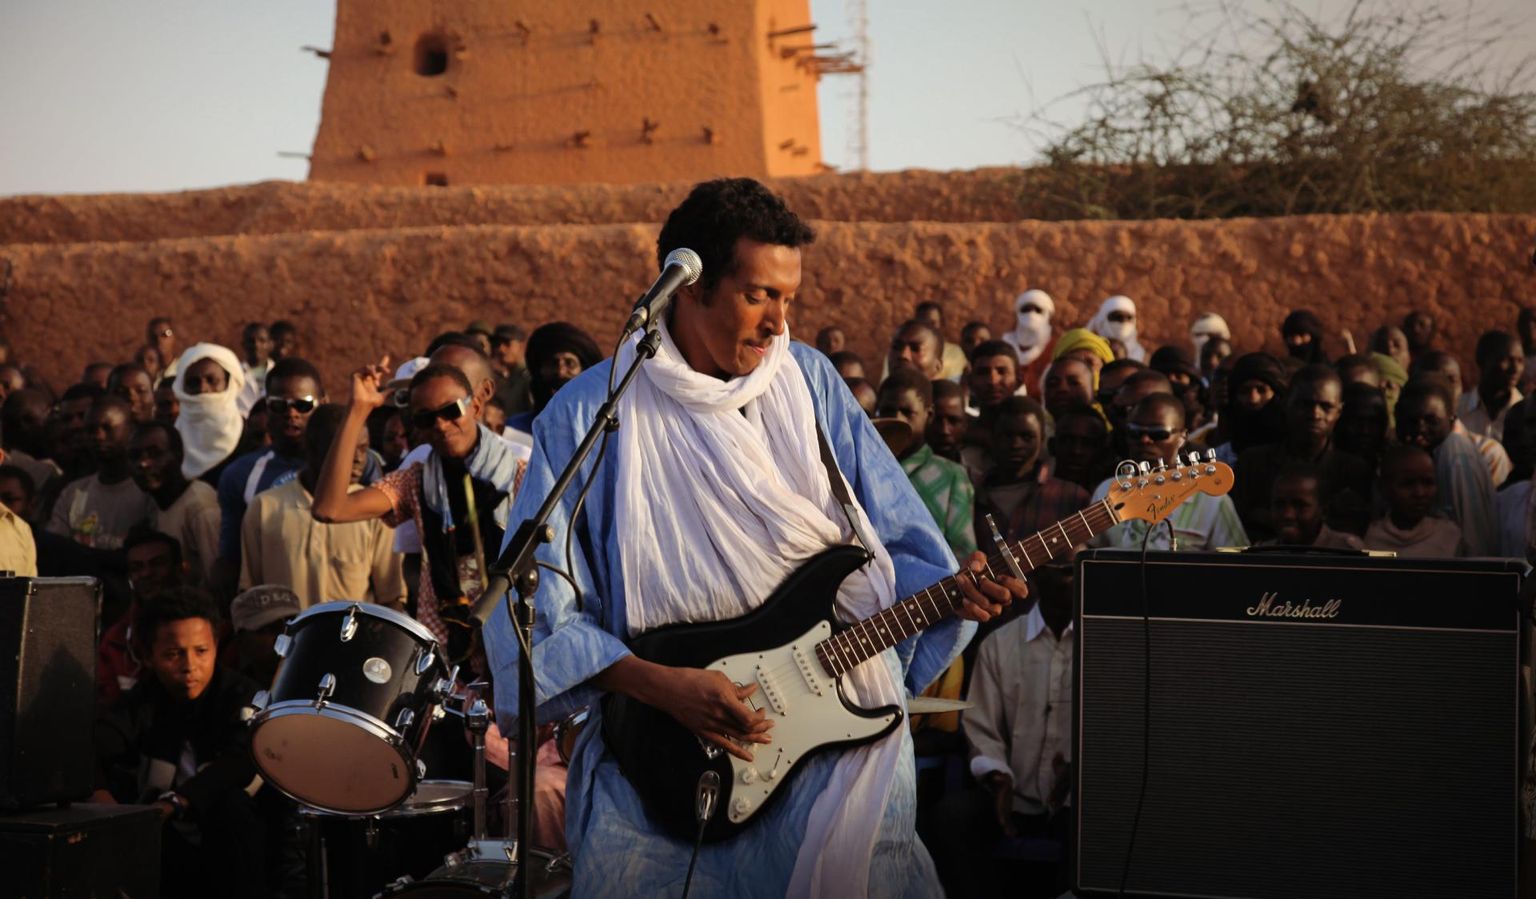 Bombino jaoks ei ole kitarr mitte relv, vaid haamer, millega ta saab Nigeris üles ehitada oma tuareegi kodu.